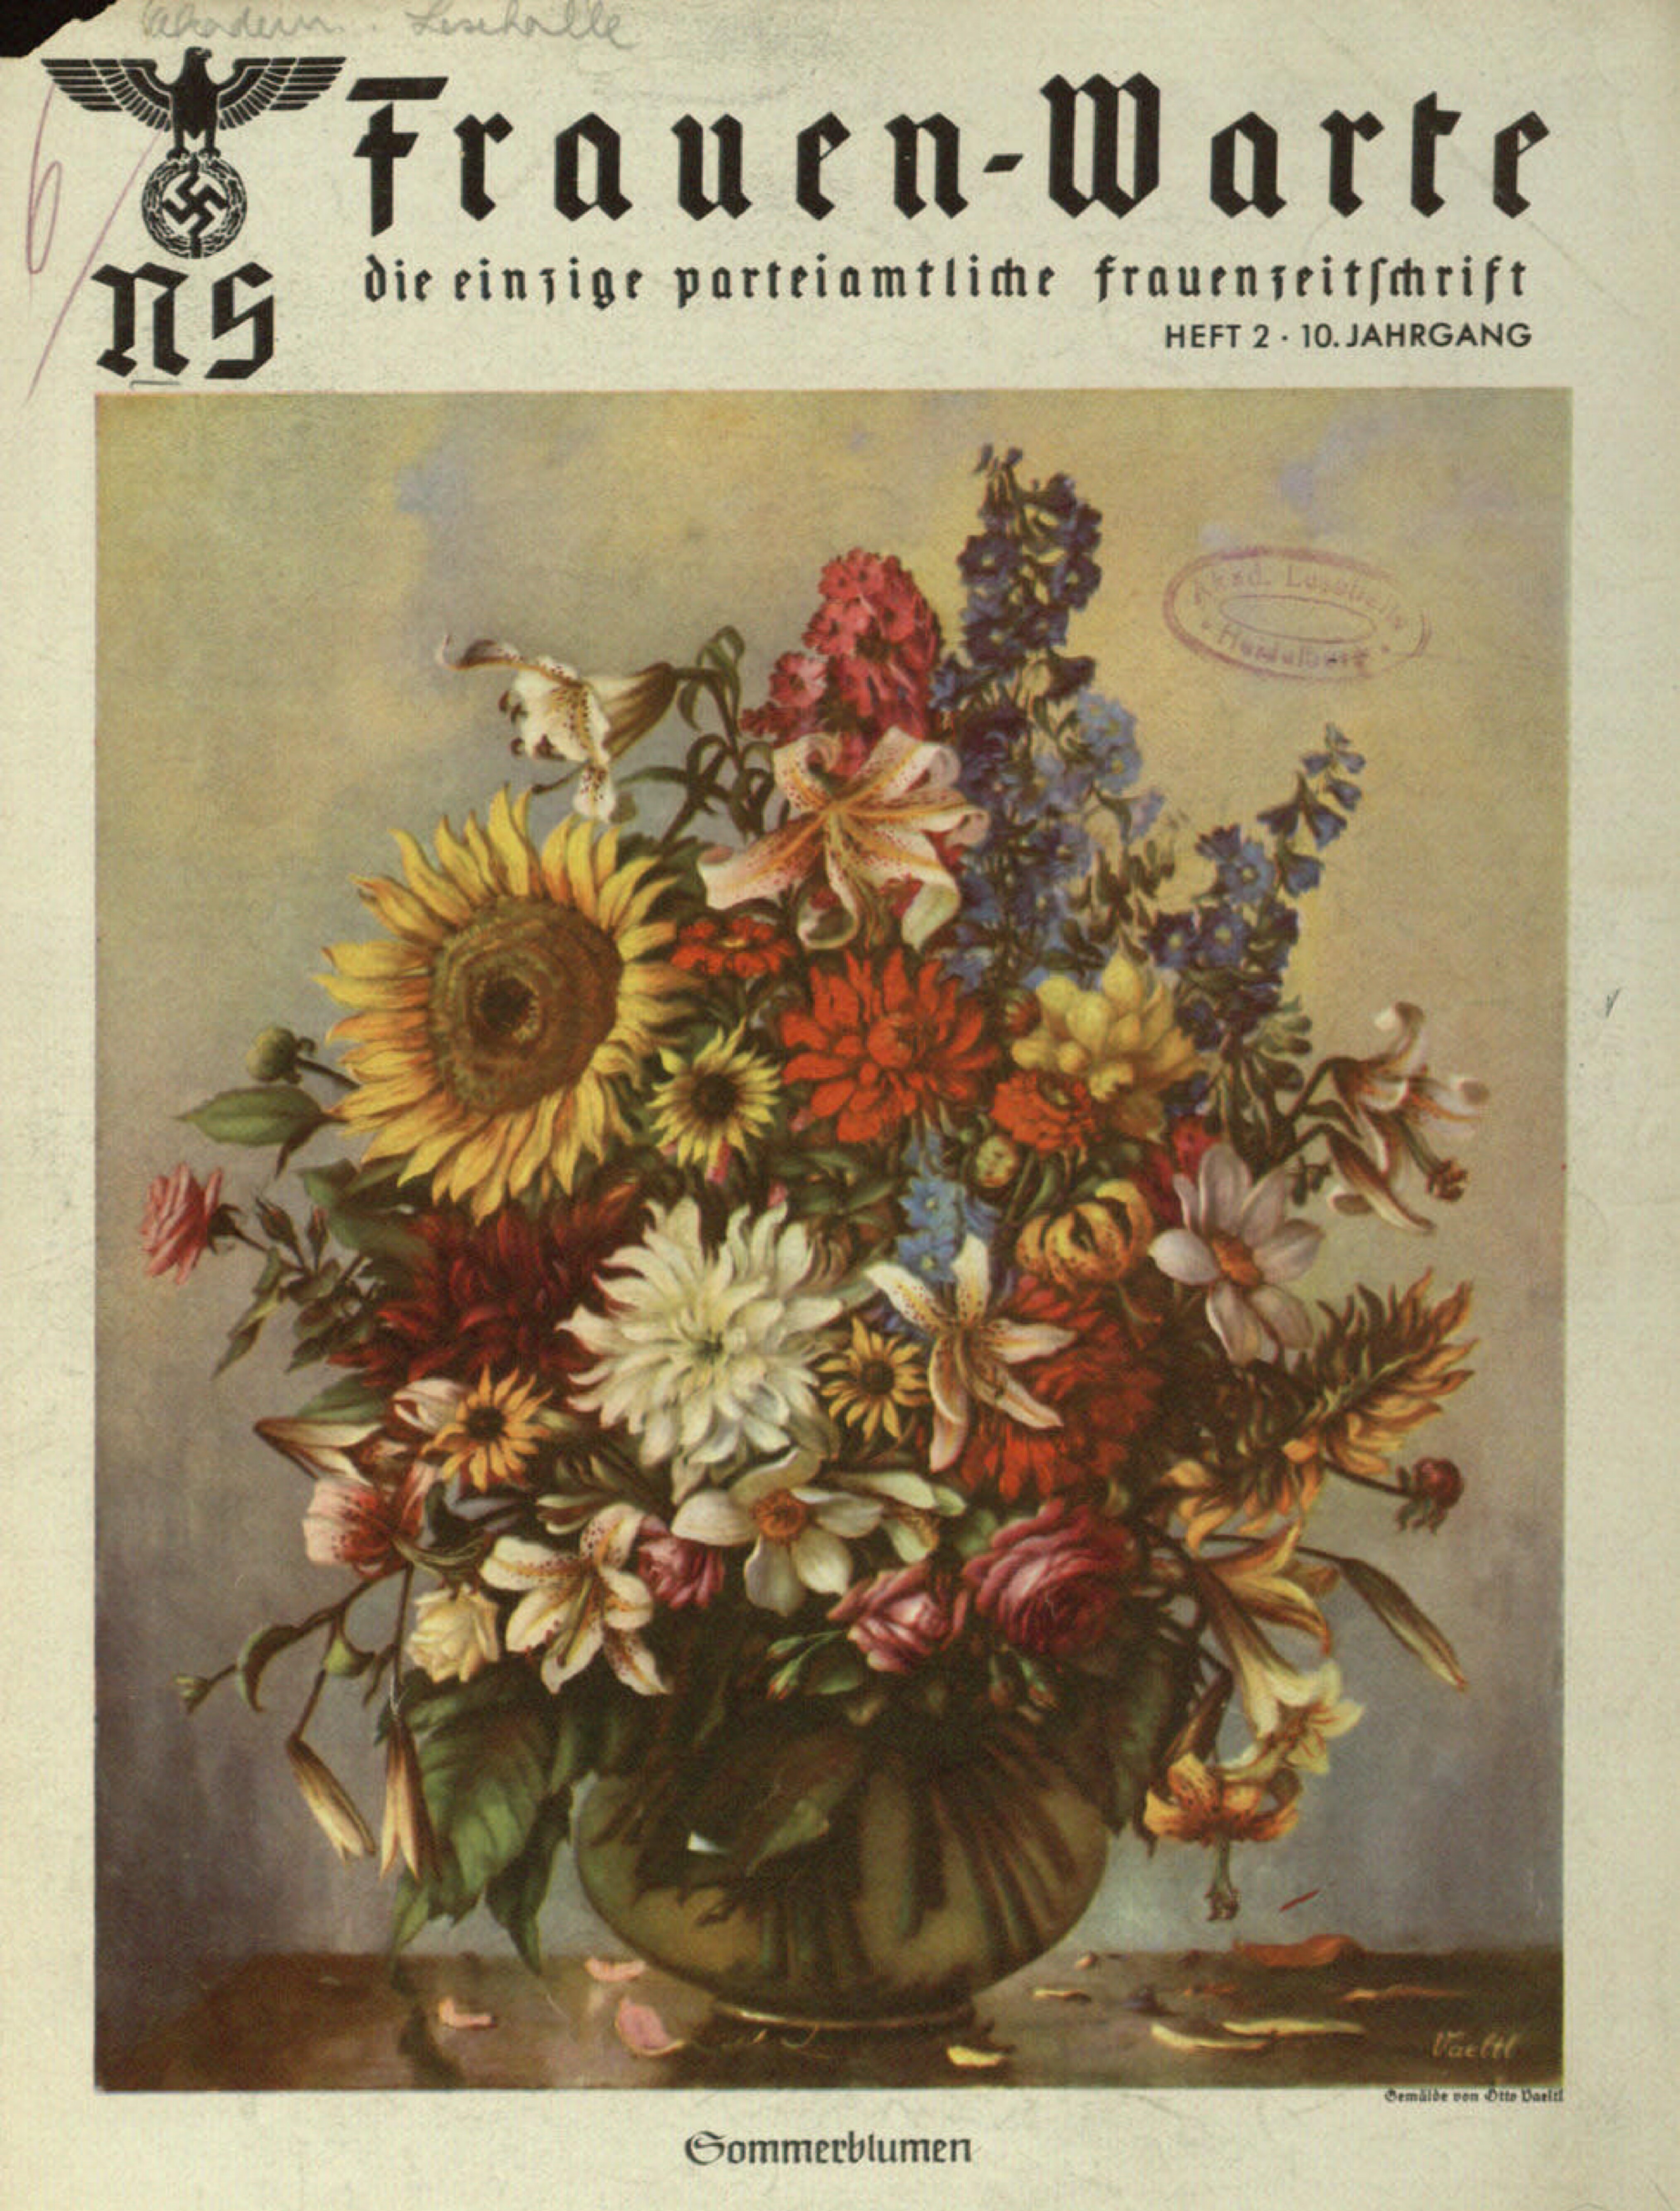 Frauen-Warte 10. Jahrgang Heft 02 (1941, 20 S., Scan, Fraktur)